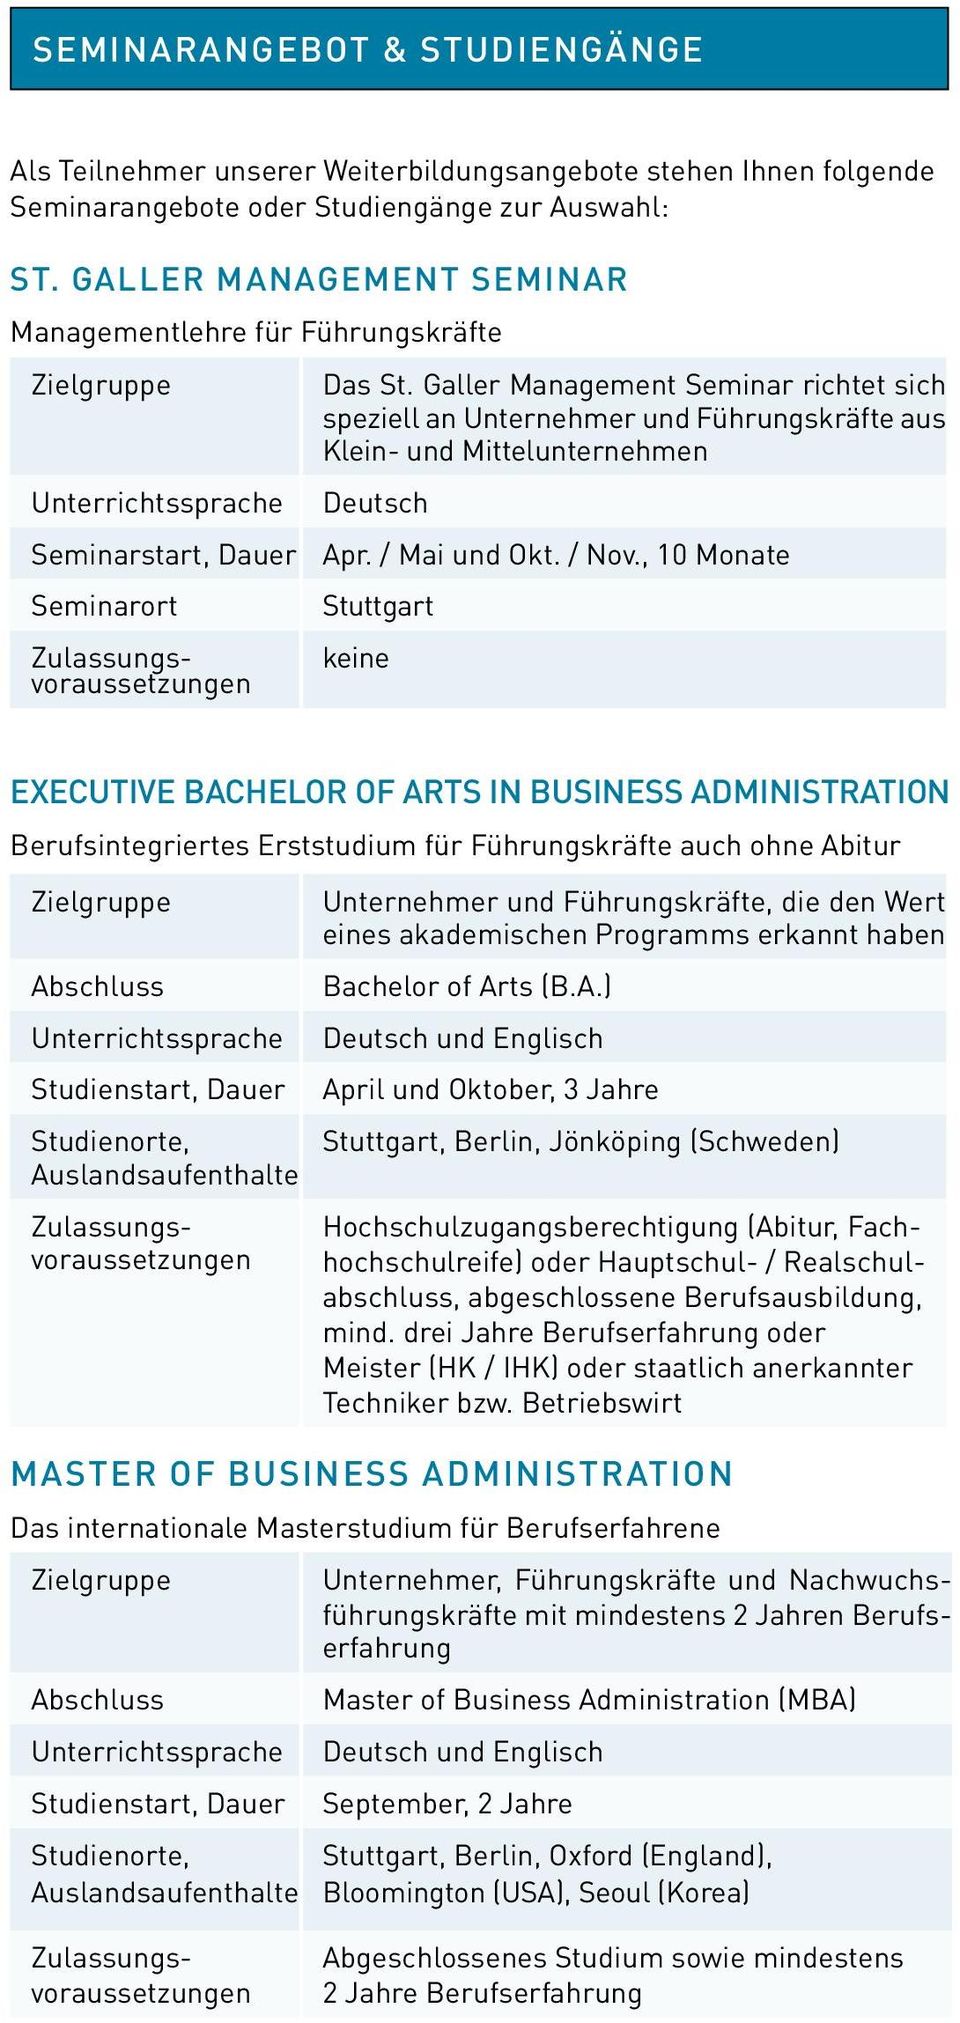 Galler Management Seminar richtet sich speziell an Unternehmer und Führungskräfte aus Klein- und Mittelunternehmen Deutsch Apr. / Mai und Okt. / Nov.